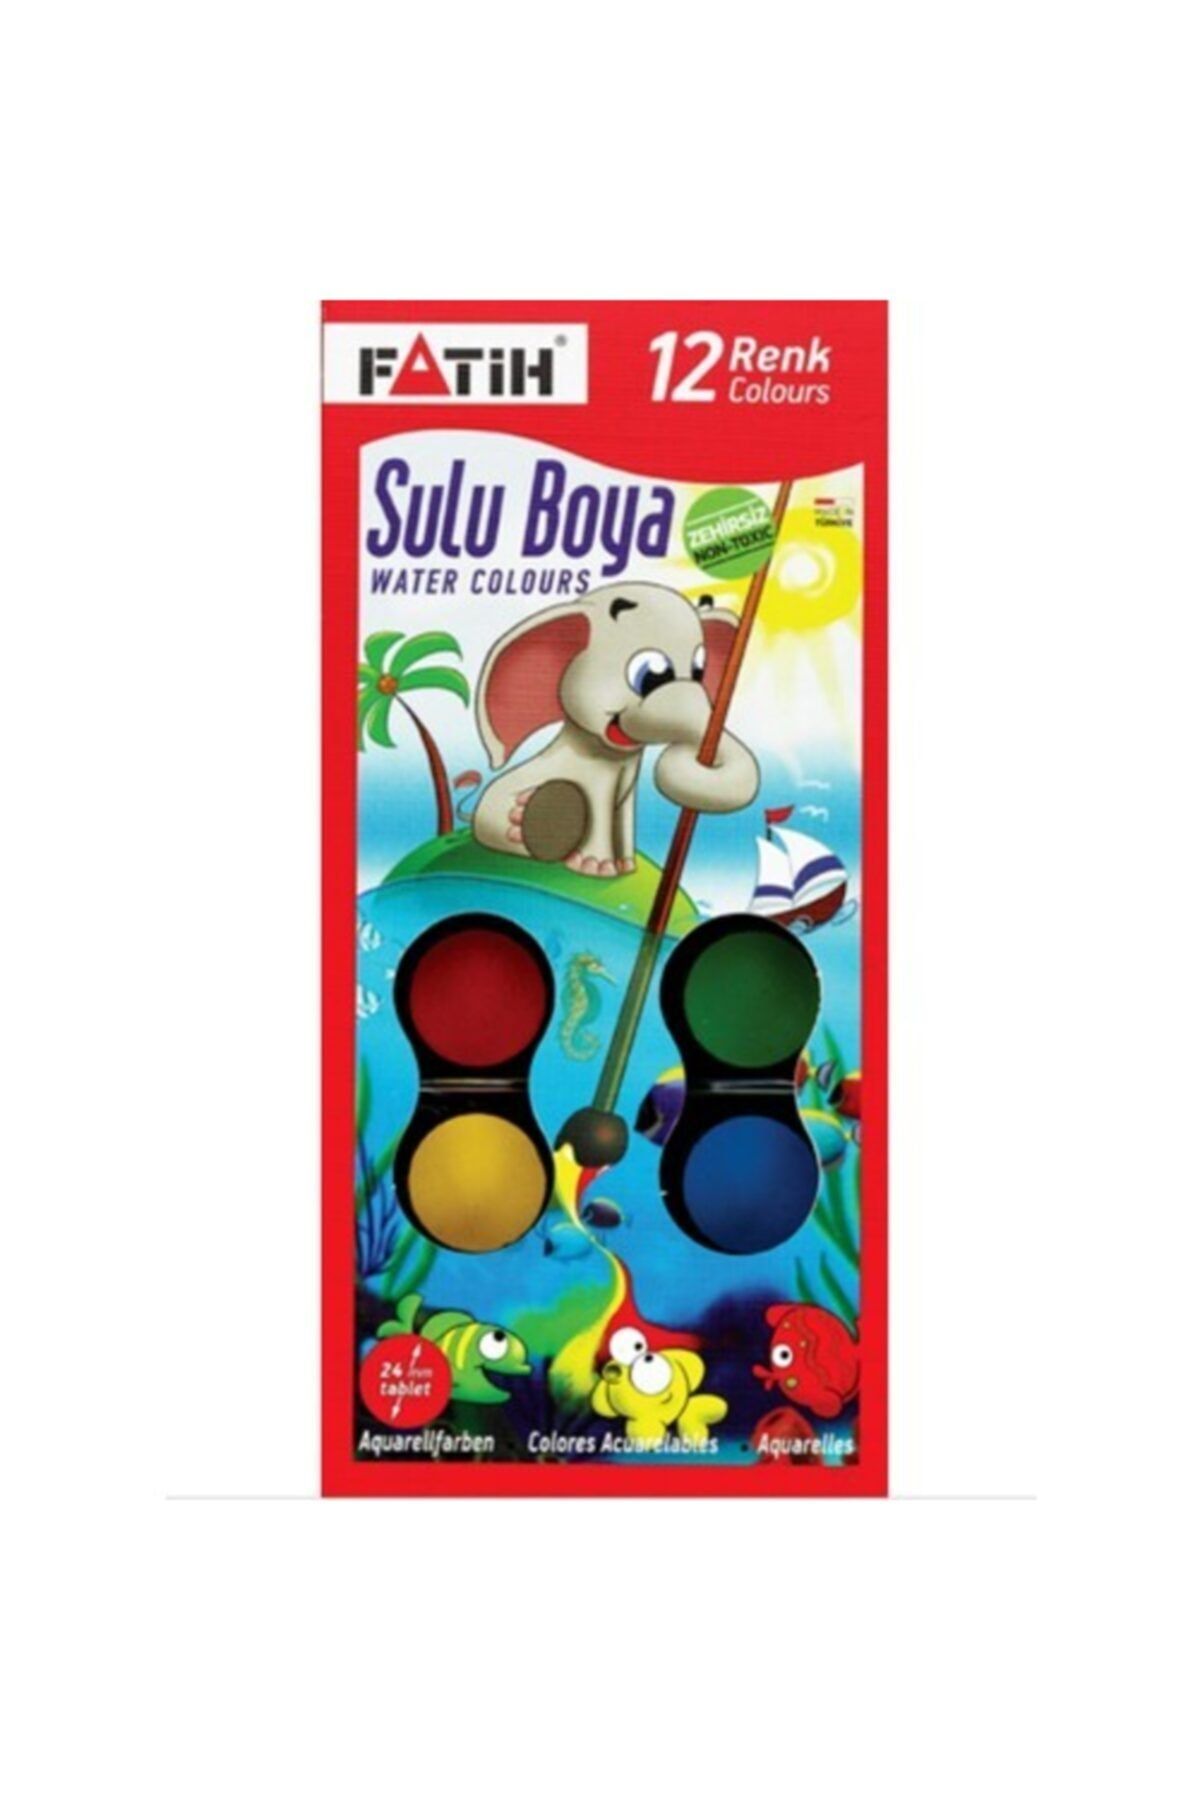 Fatih Sulu Boya 12 Renk S12